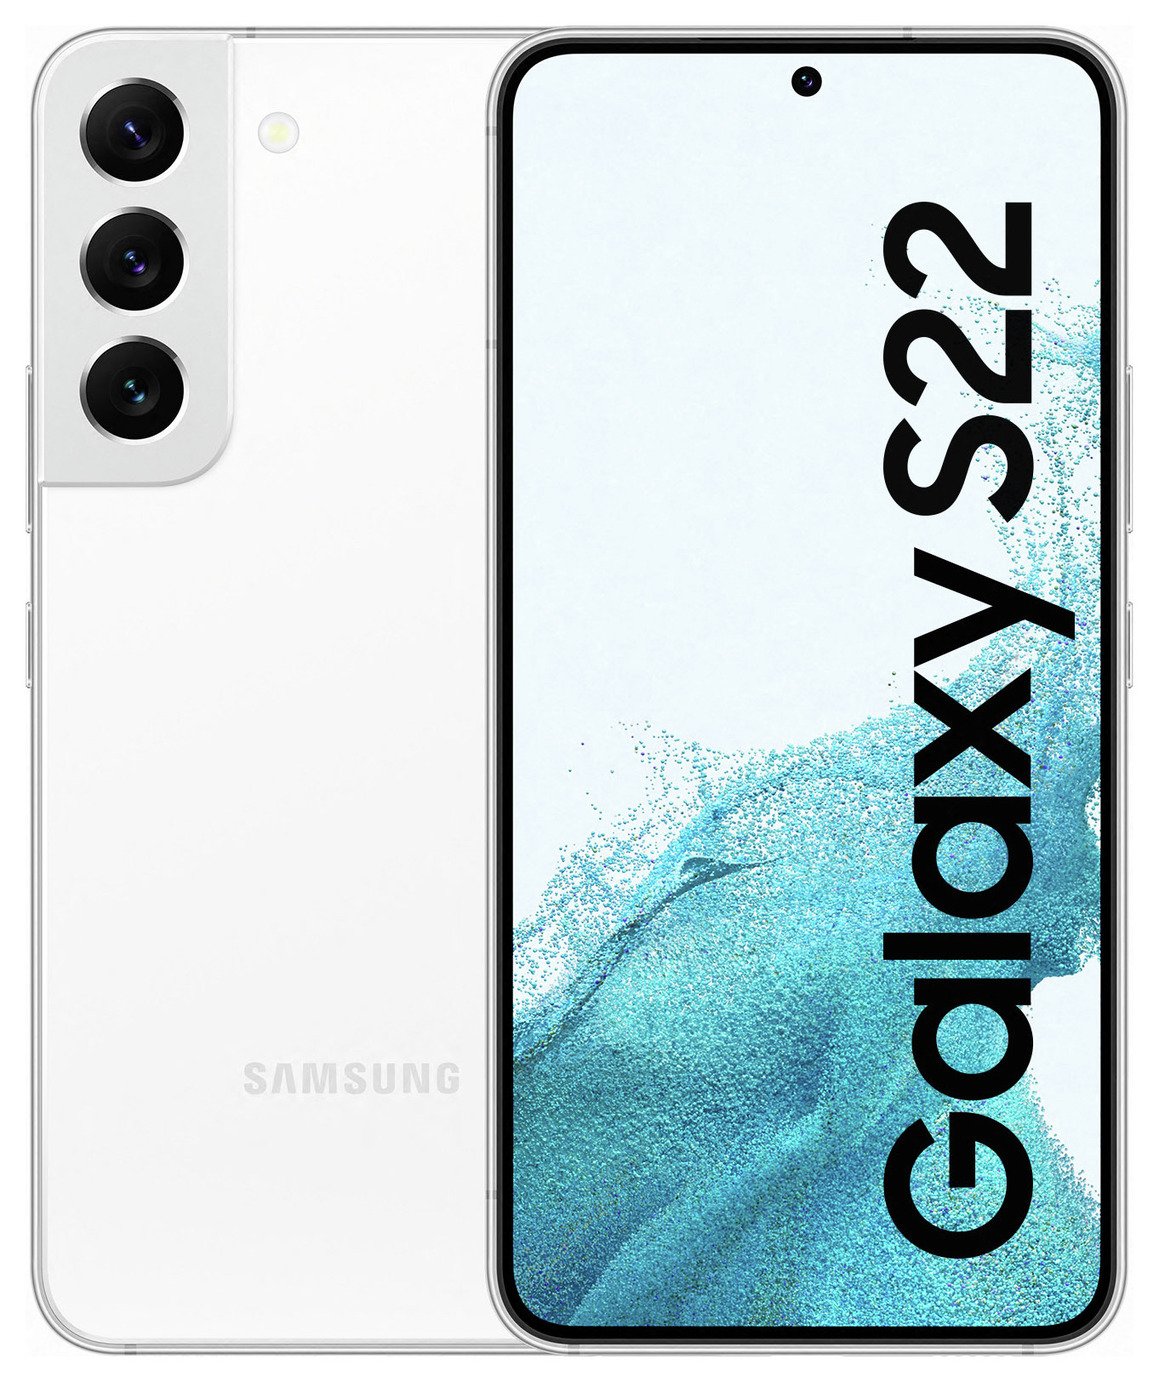 LOUIS VUITTON LV DOTS LOGO ICON Samsung Galaxy S22 Ultra Case Cover